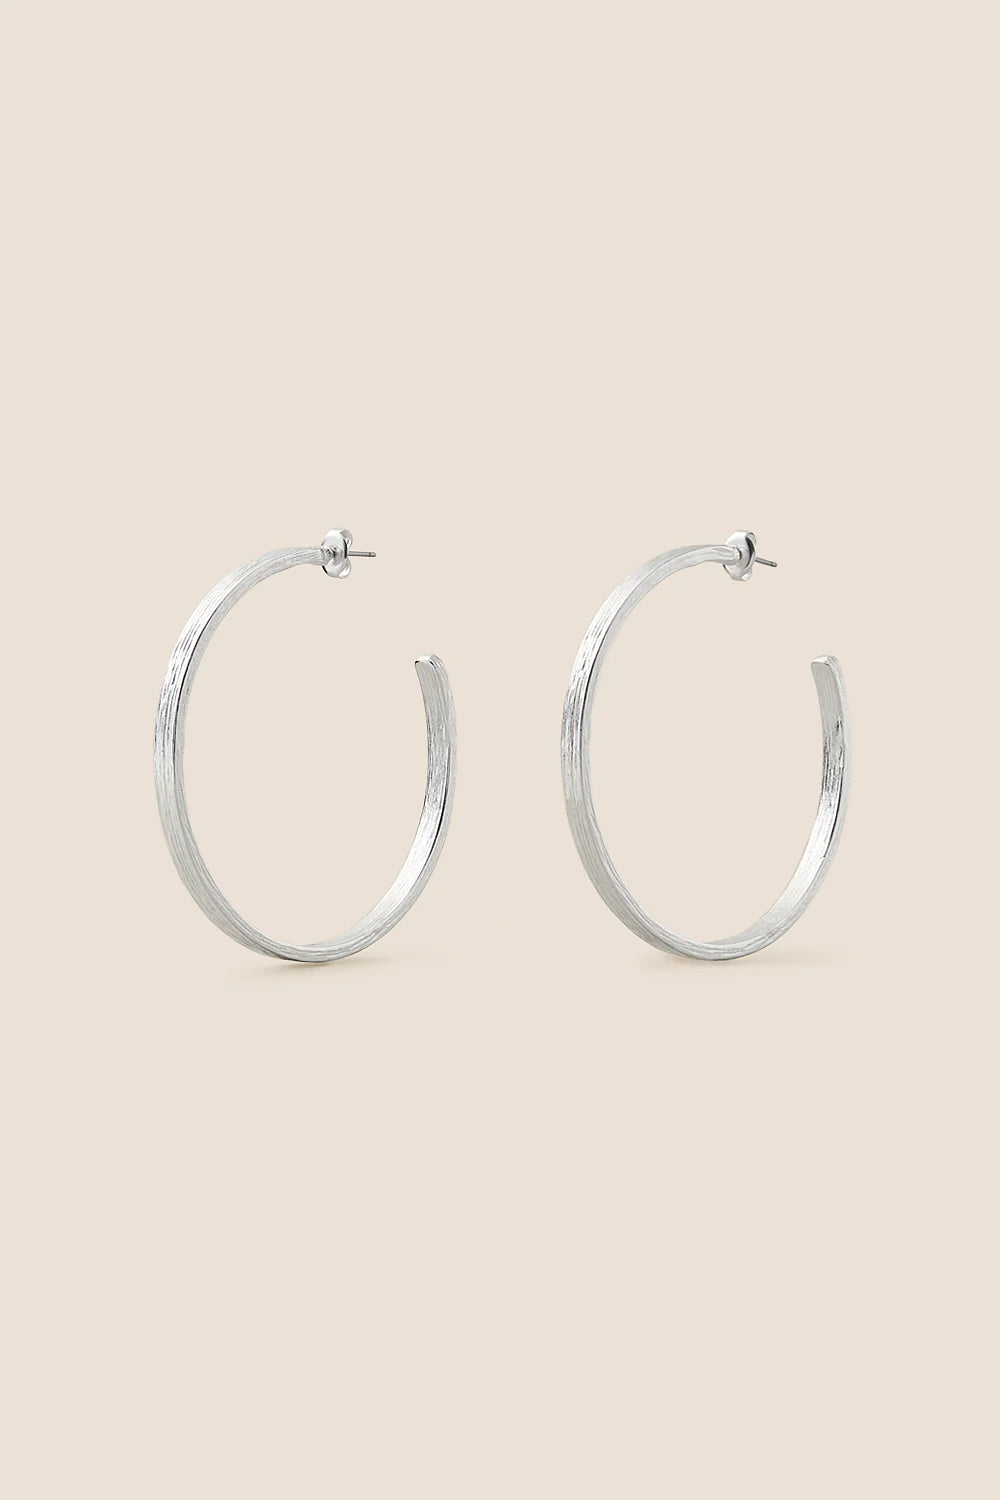 Octavia Silver Earrings